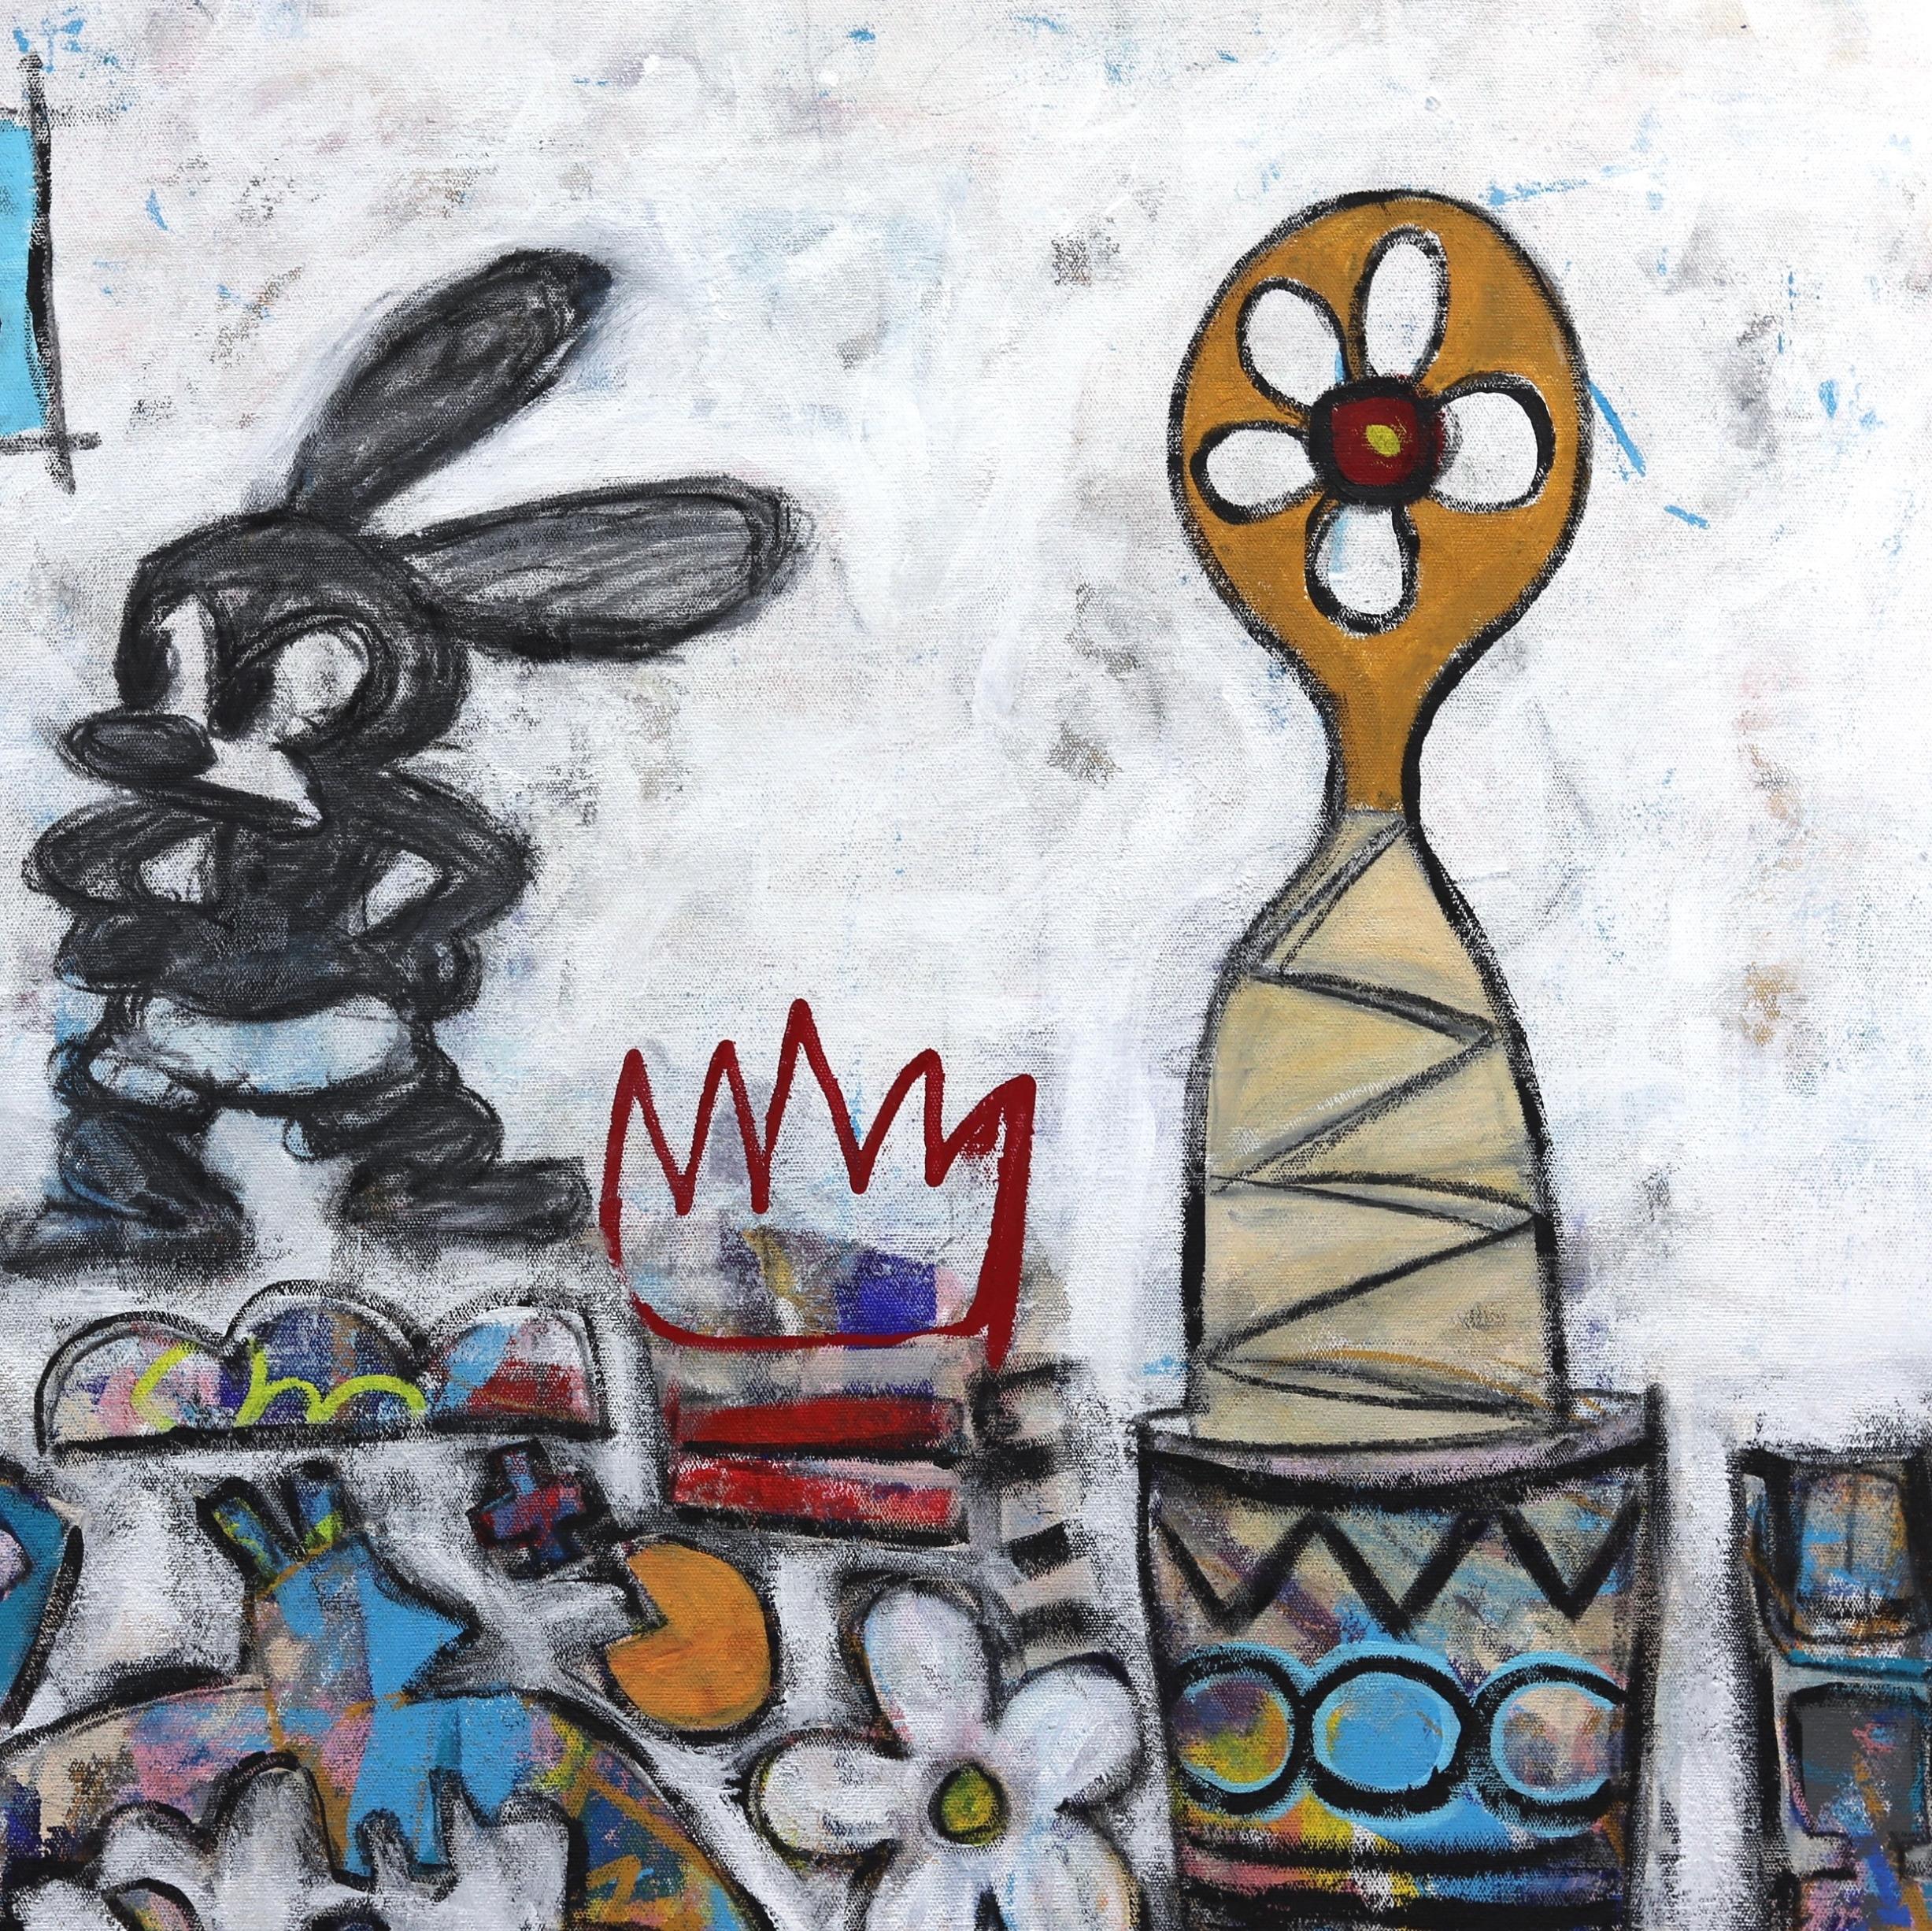 L'artiste d'expressionnisme abstrait urbain Tommy Lennartsson s'inspire de la culture visuelle du street art et du pop art pour créer ses œuvres originales et vibrantes en techniques mixtes. Il utilise un mélange d'éléments abstraits et figuratifs